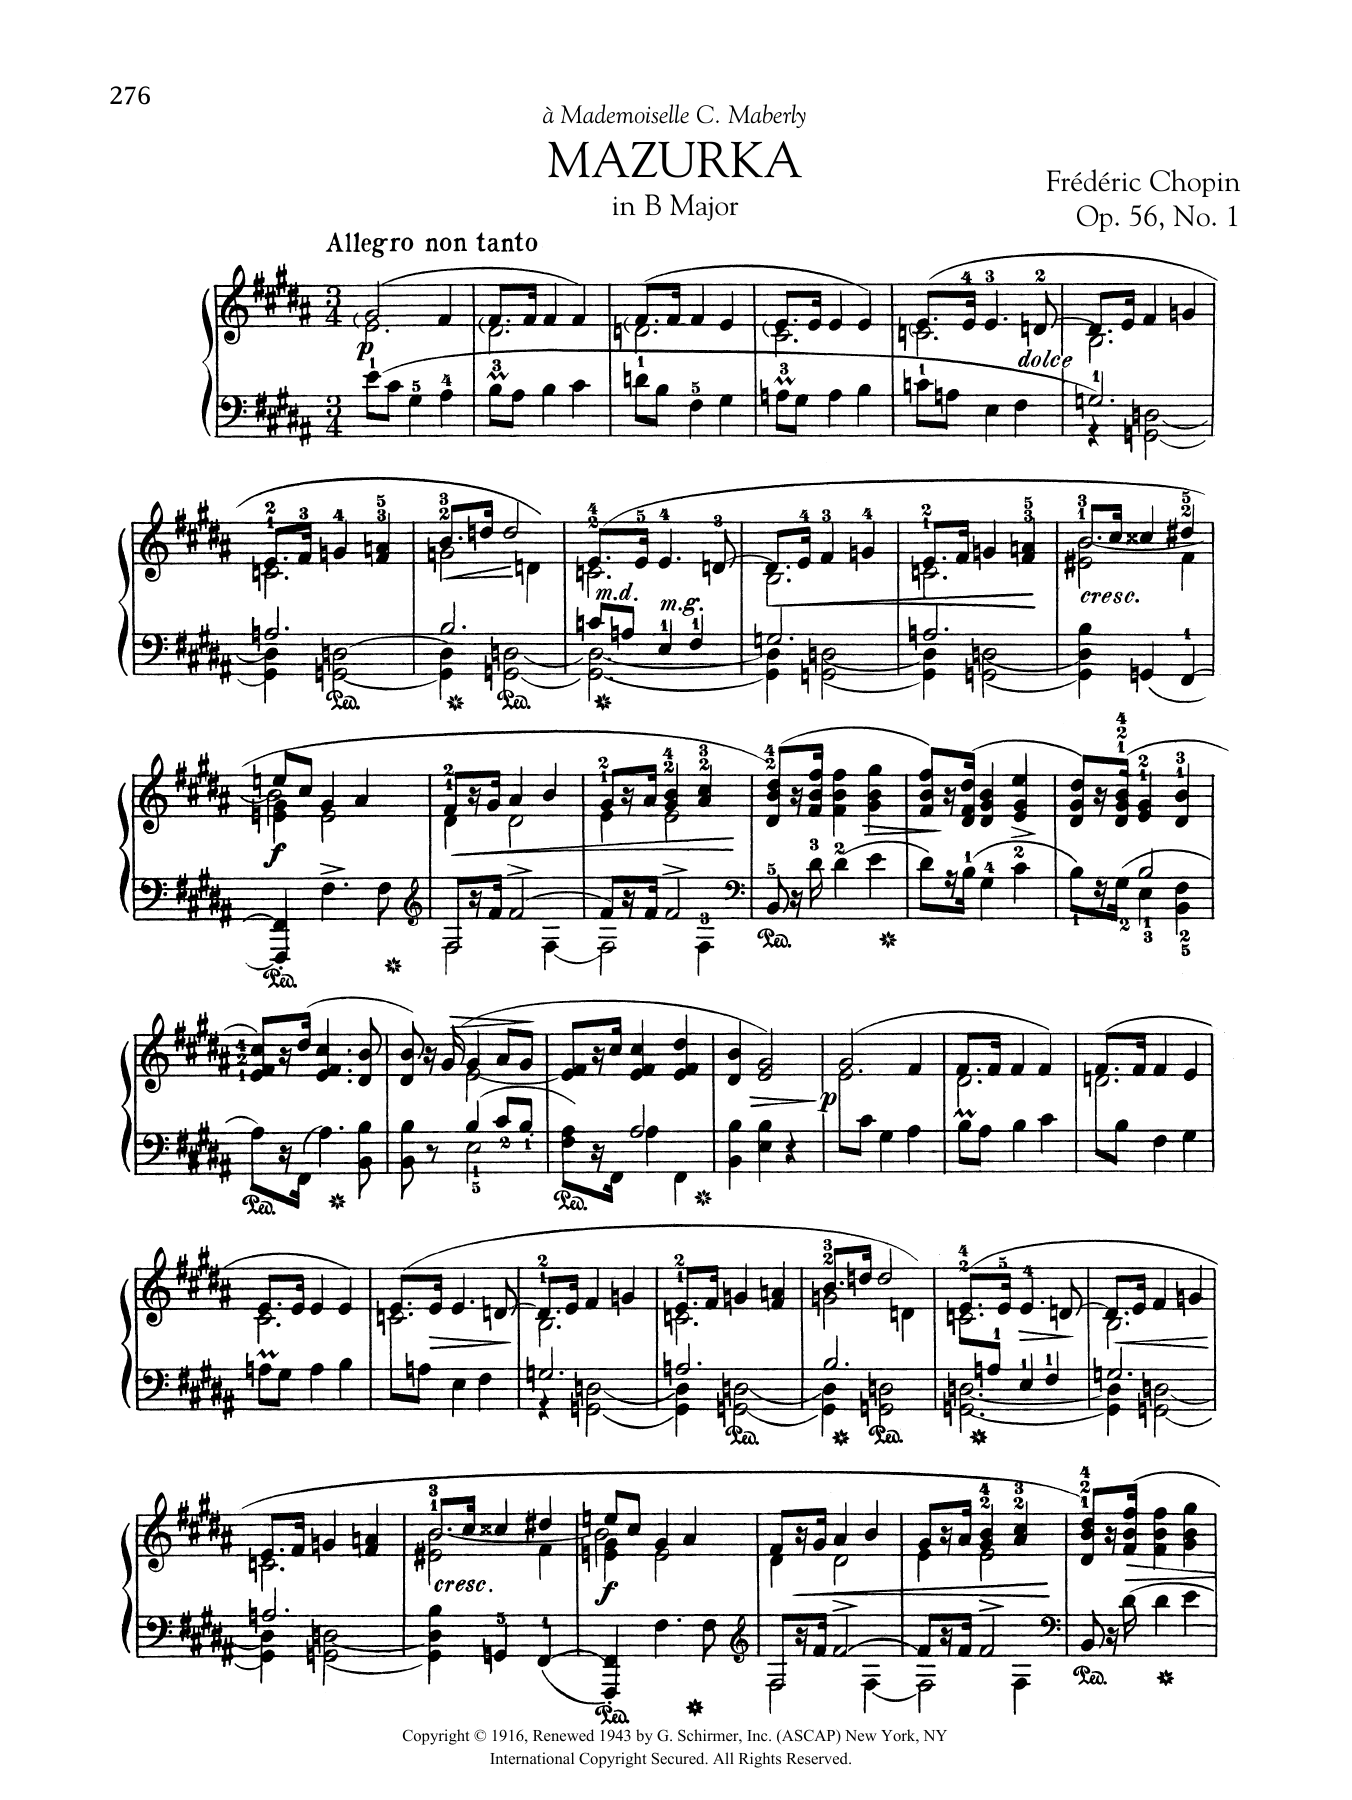 Download Frederic Chopin Mazurka in B Major, Op. 56, No. 1 Sheet Music